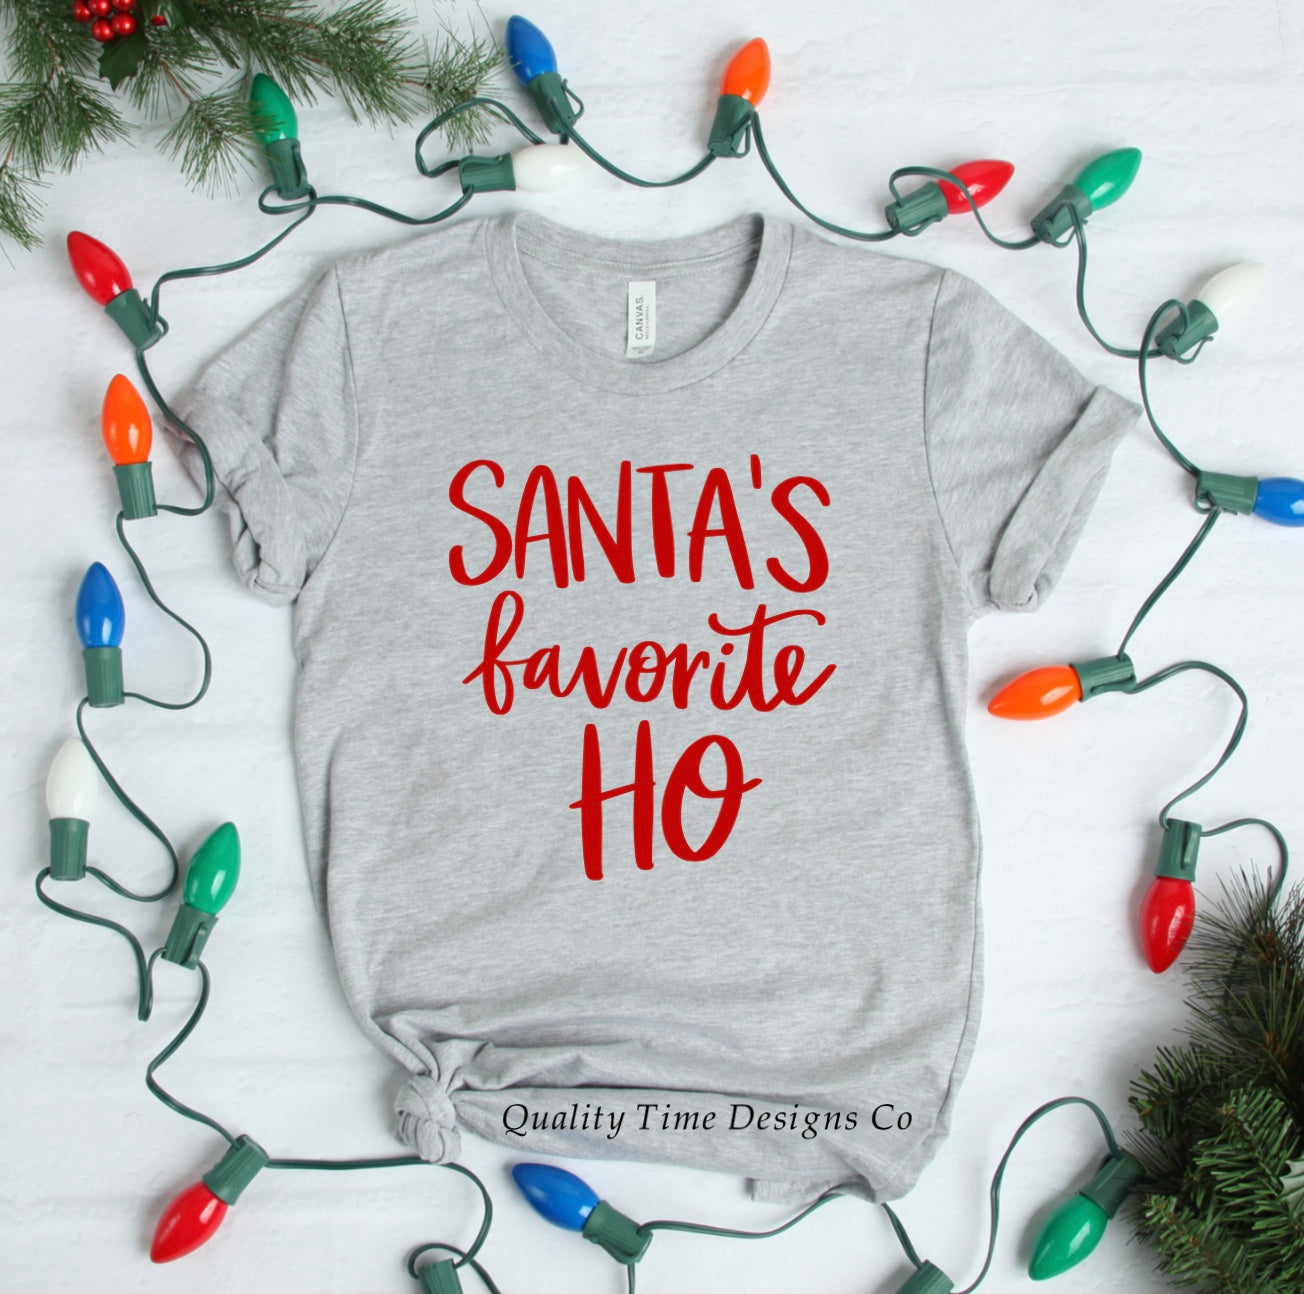 Santa’s favorite ho t-shirt 